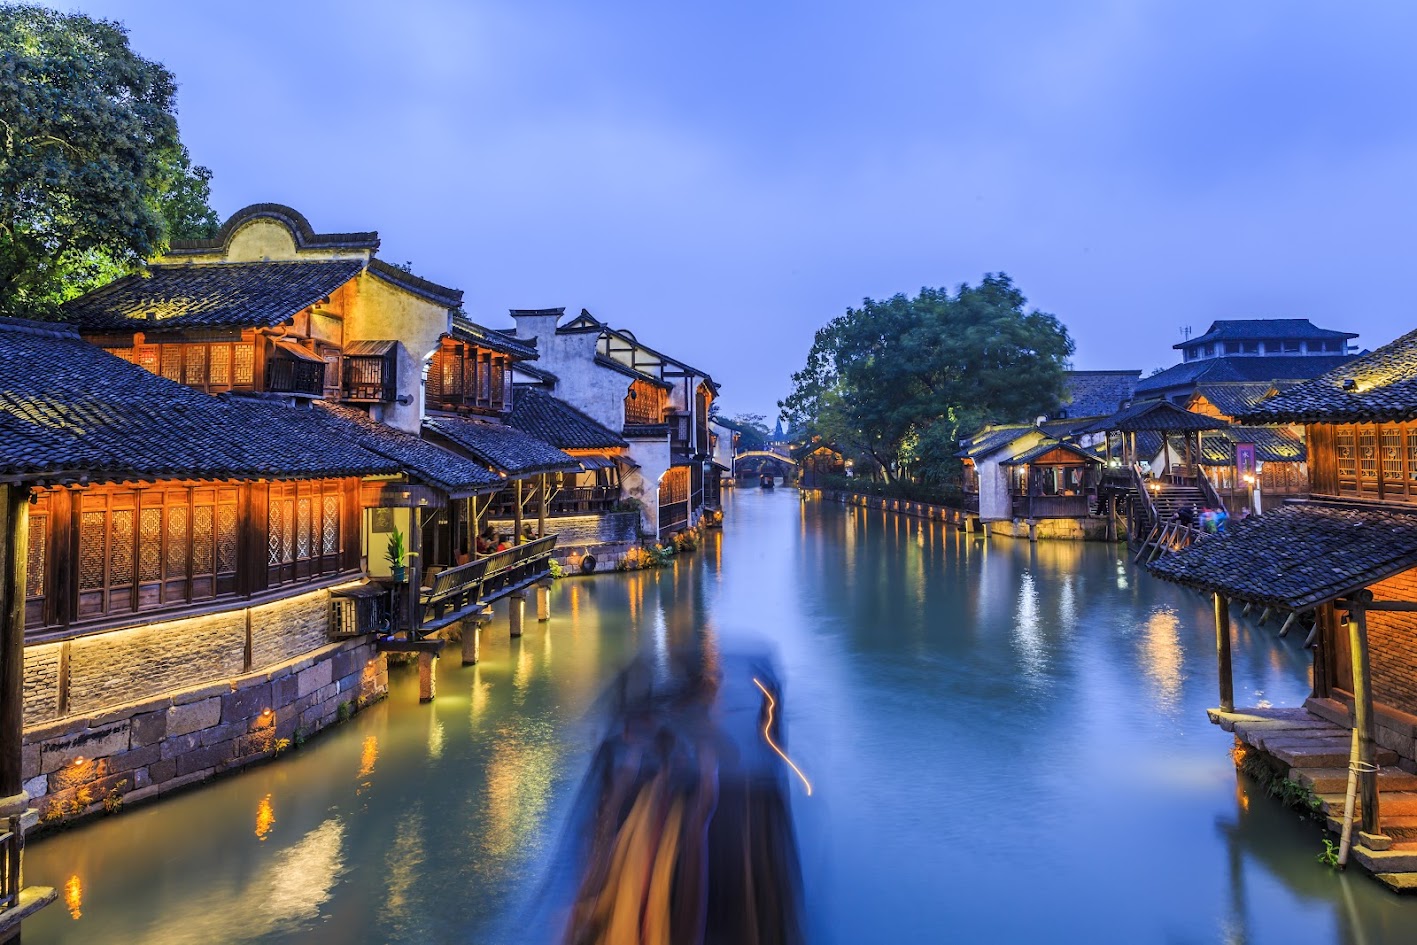   Cảnh sắc tại Ô Trấn tại Giang Nam- Trung Quốc với vẻ đẹp lung linh, huyền bí, đậm chất vùng đất sông nước.